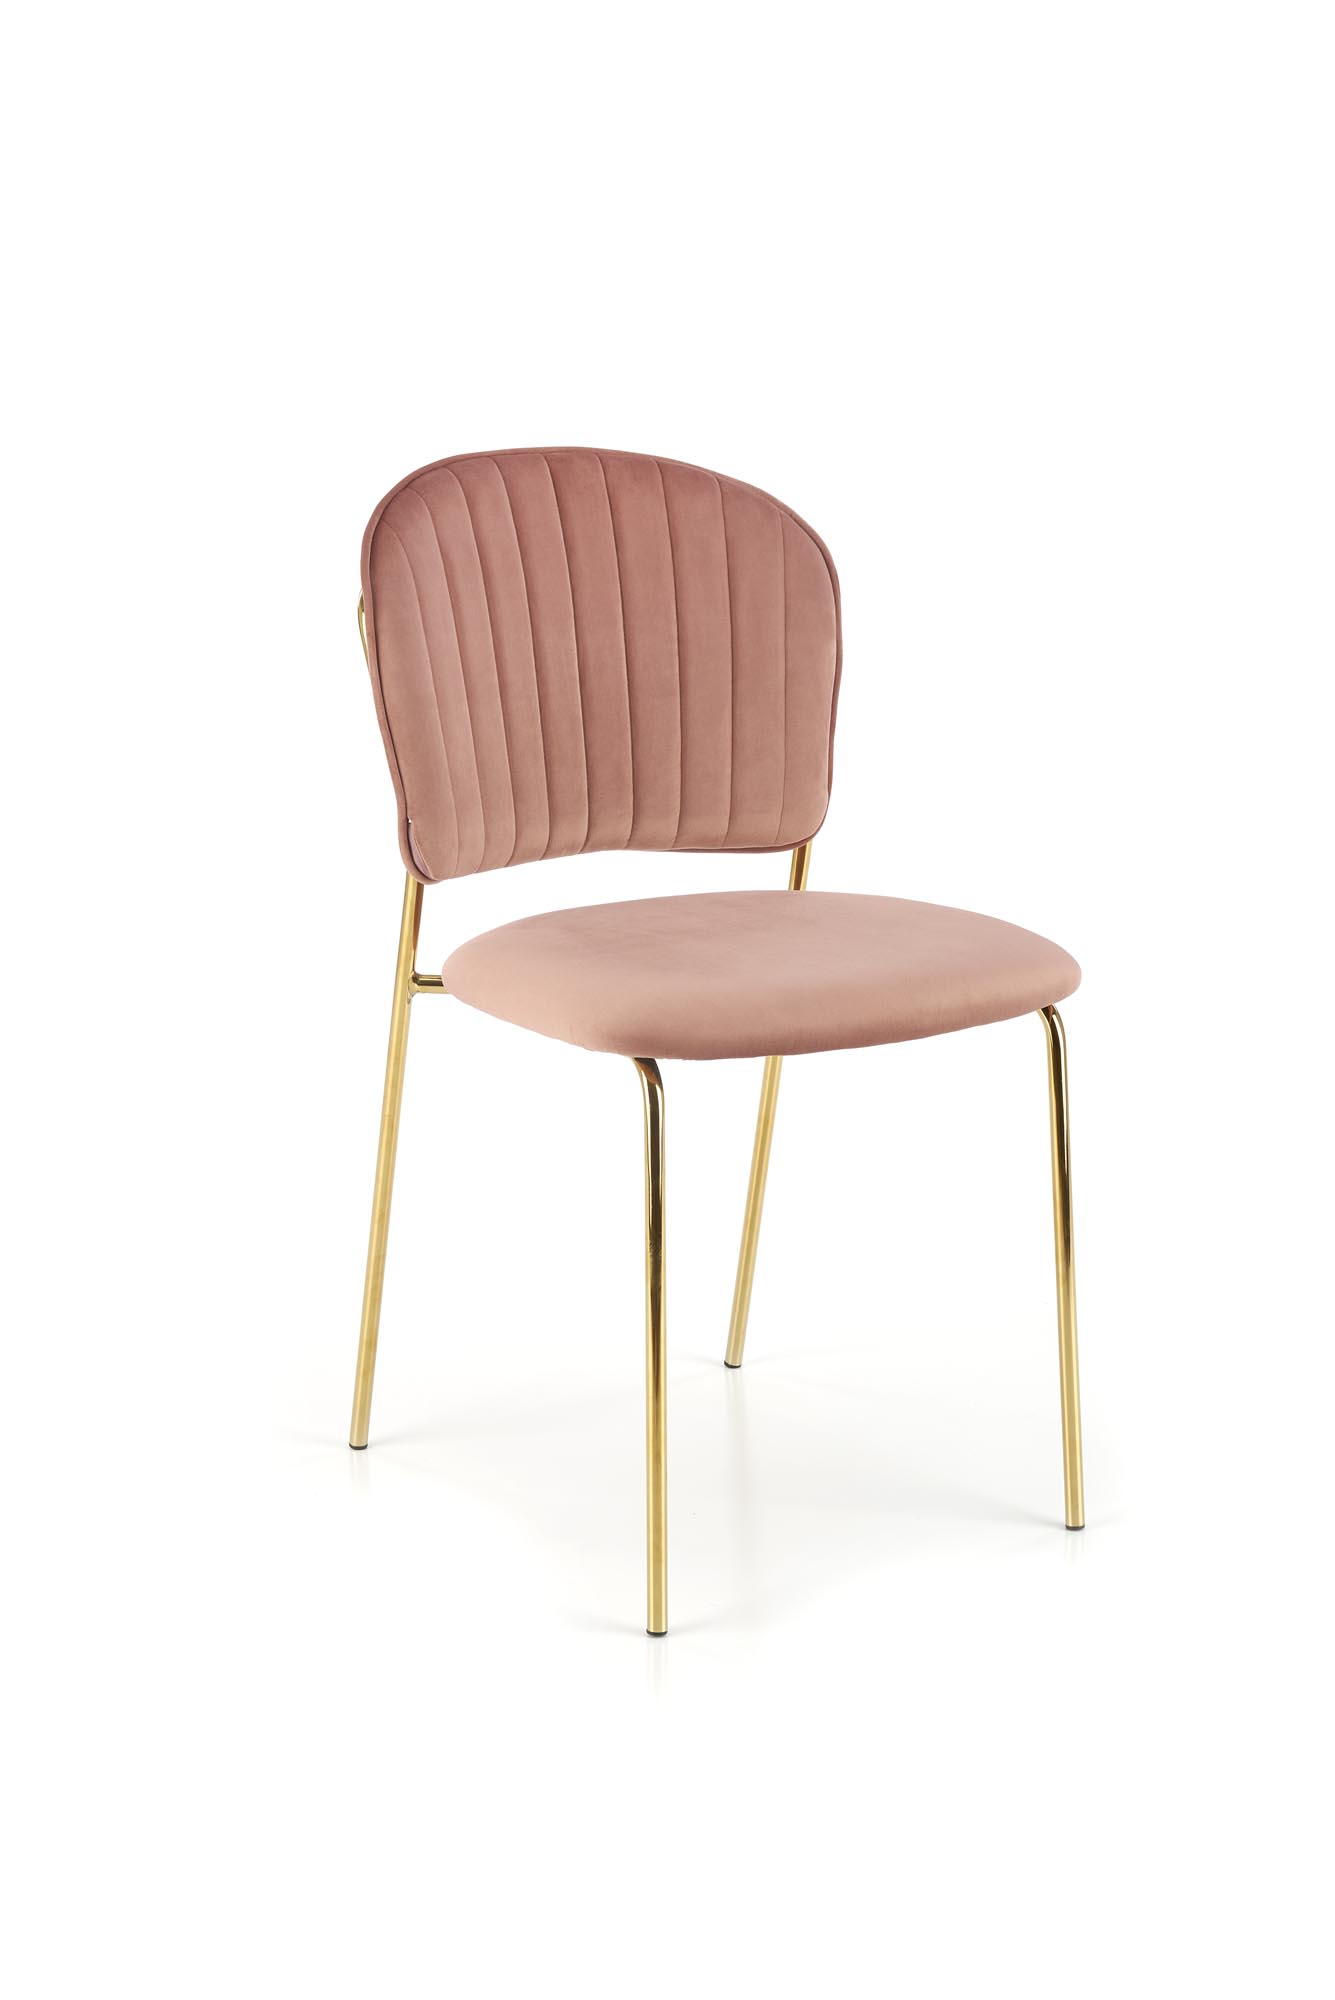 K499 Židle Růžová Židle čalouněné k499 - Růžová